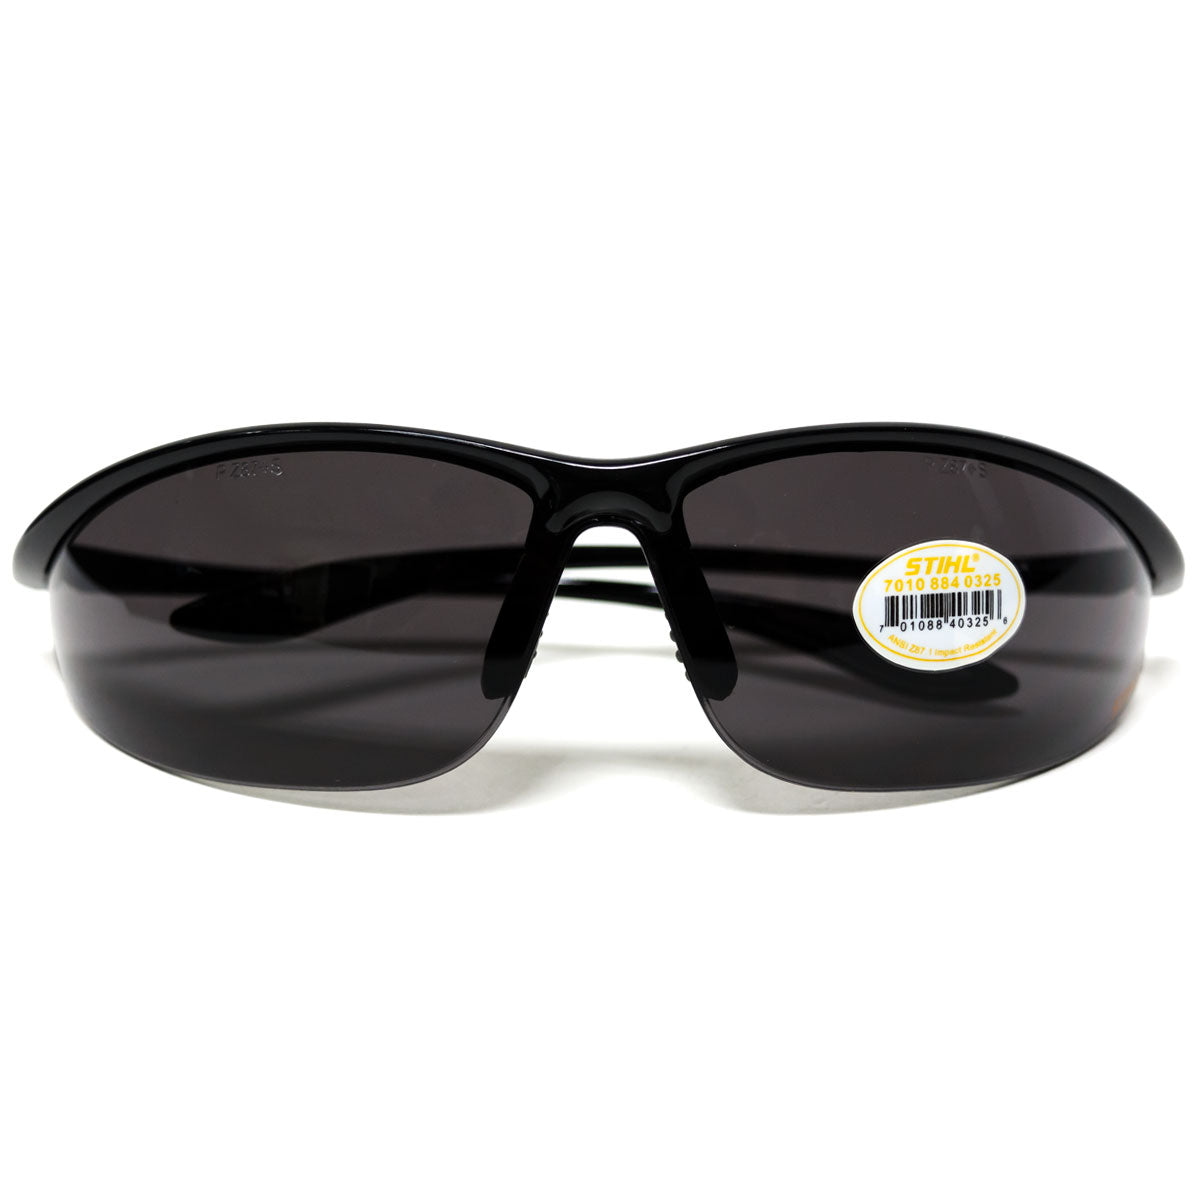 Stihl 7010 884 0325 Sleek Black Frame & Grey Smoke Lens Safety Glasses